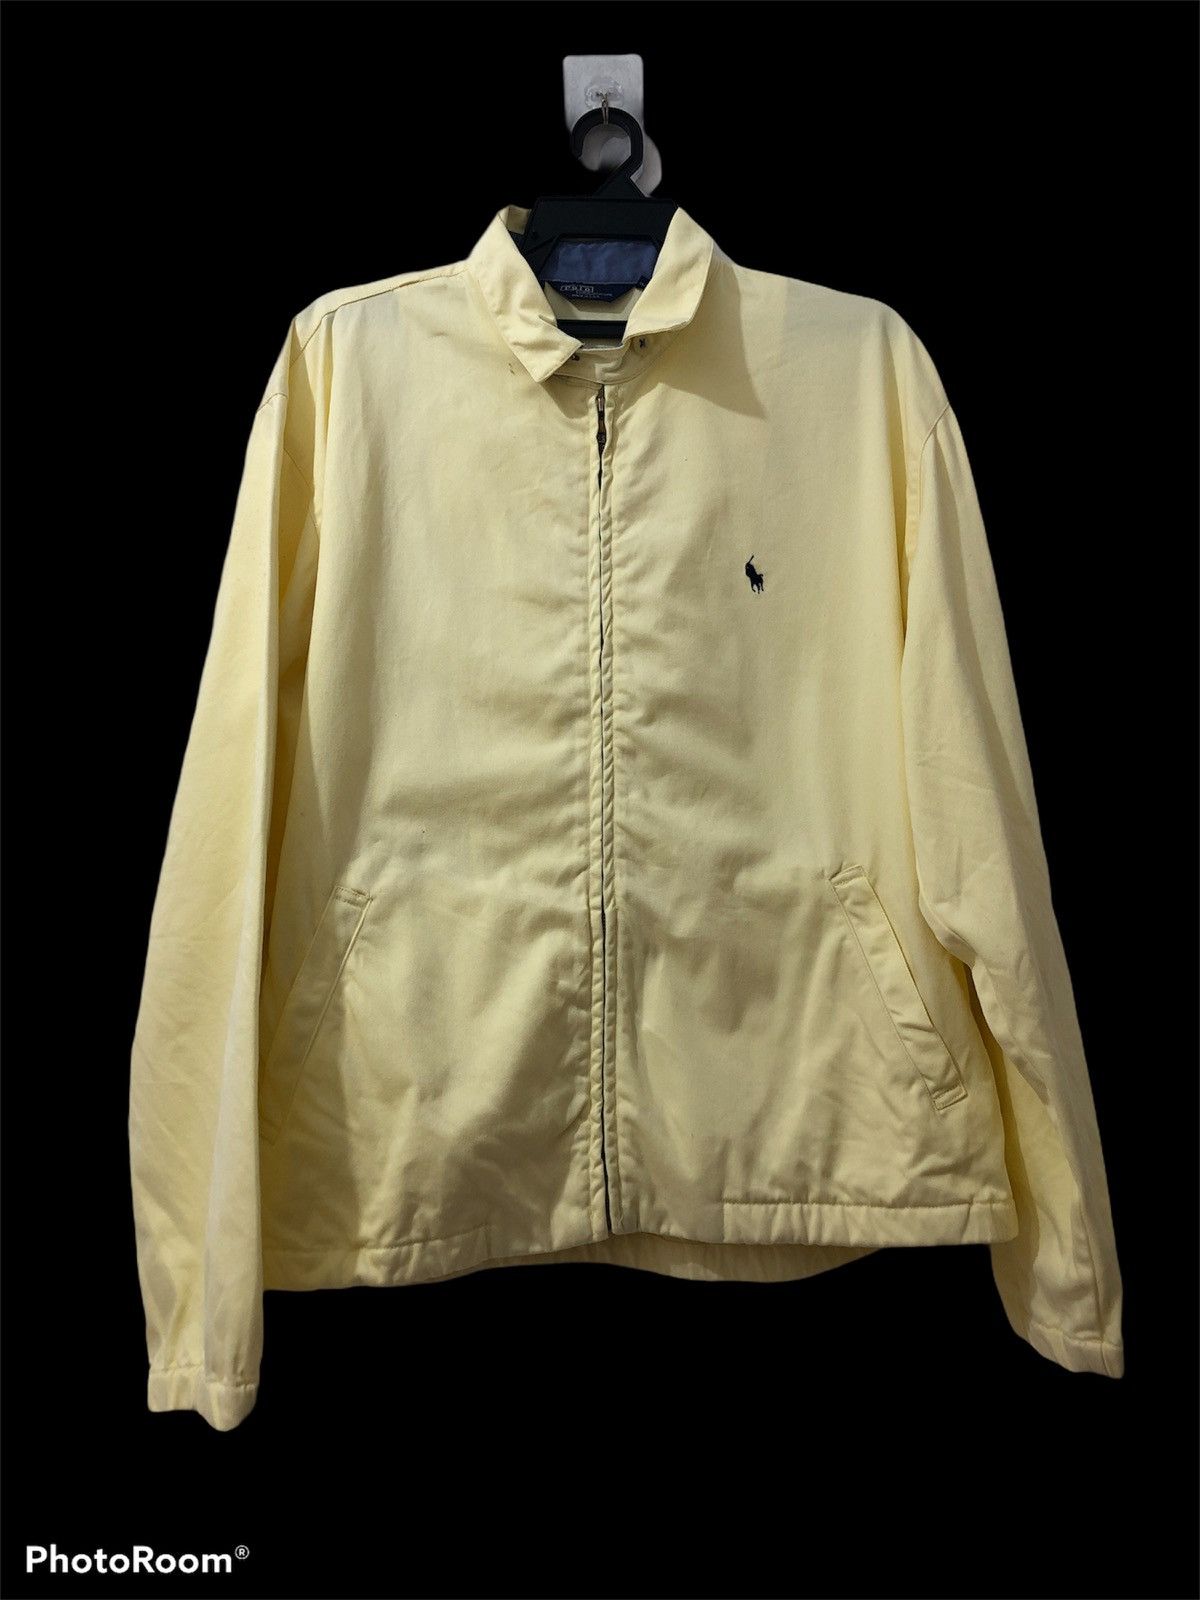 Polo Ralph Lauren - Polo jacket zipper up - 1